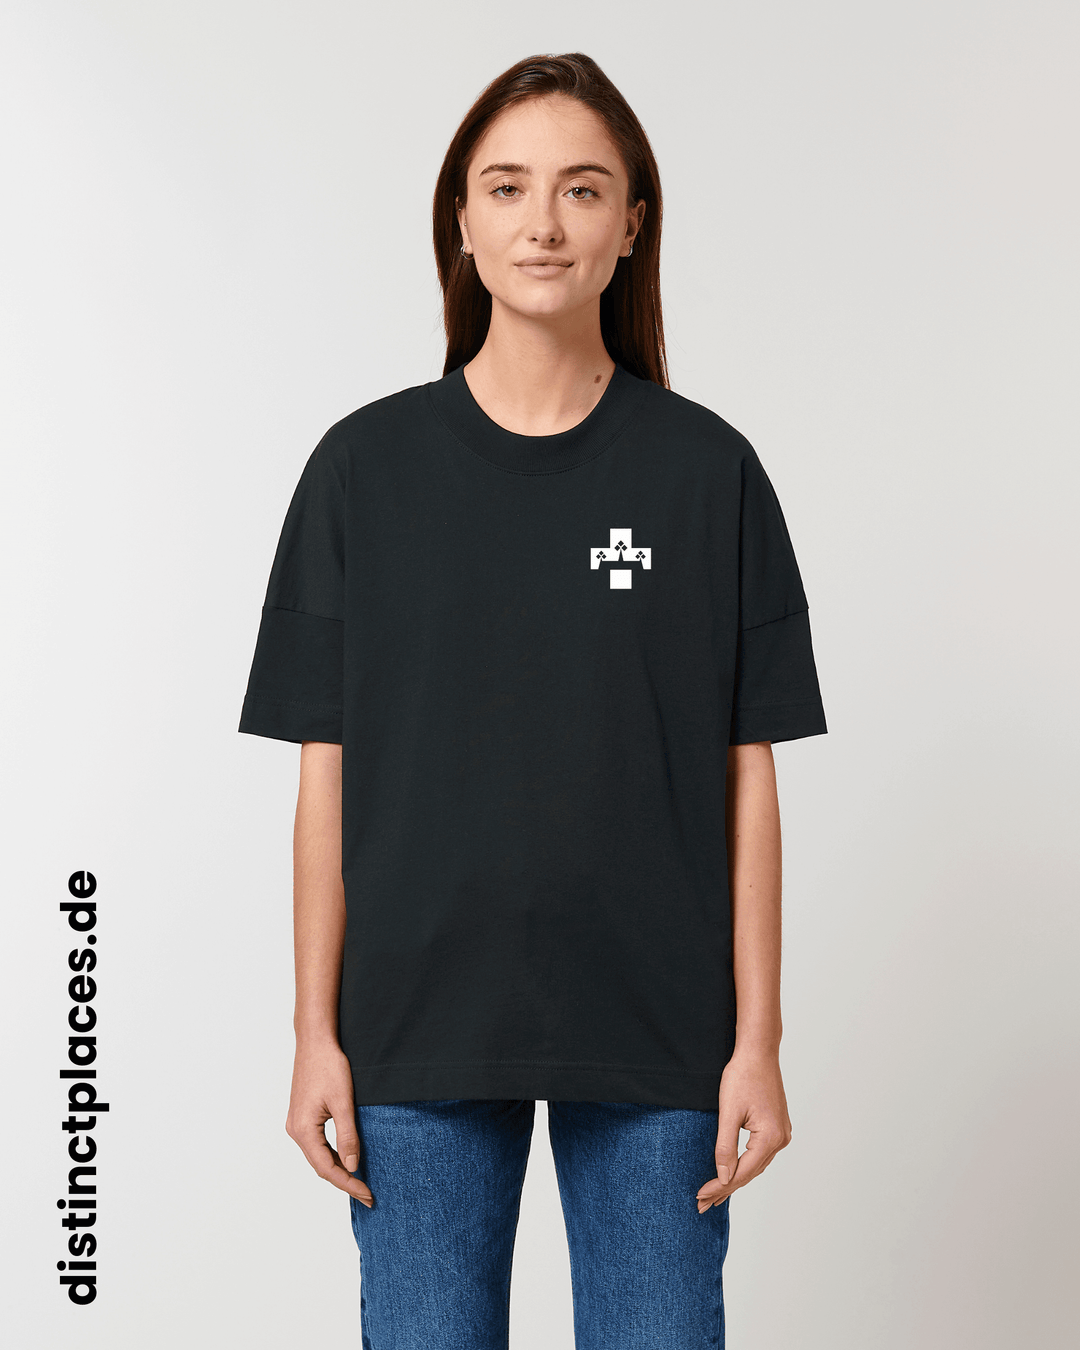 Frau von vorne trägt schwarzes fairtrade, vegan und bio-baumwoll T-Shirt mit einem minimalistischem weißen Logo, beziehungsweise Wappen für Koblenz